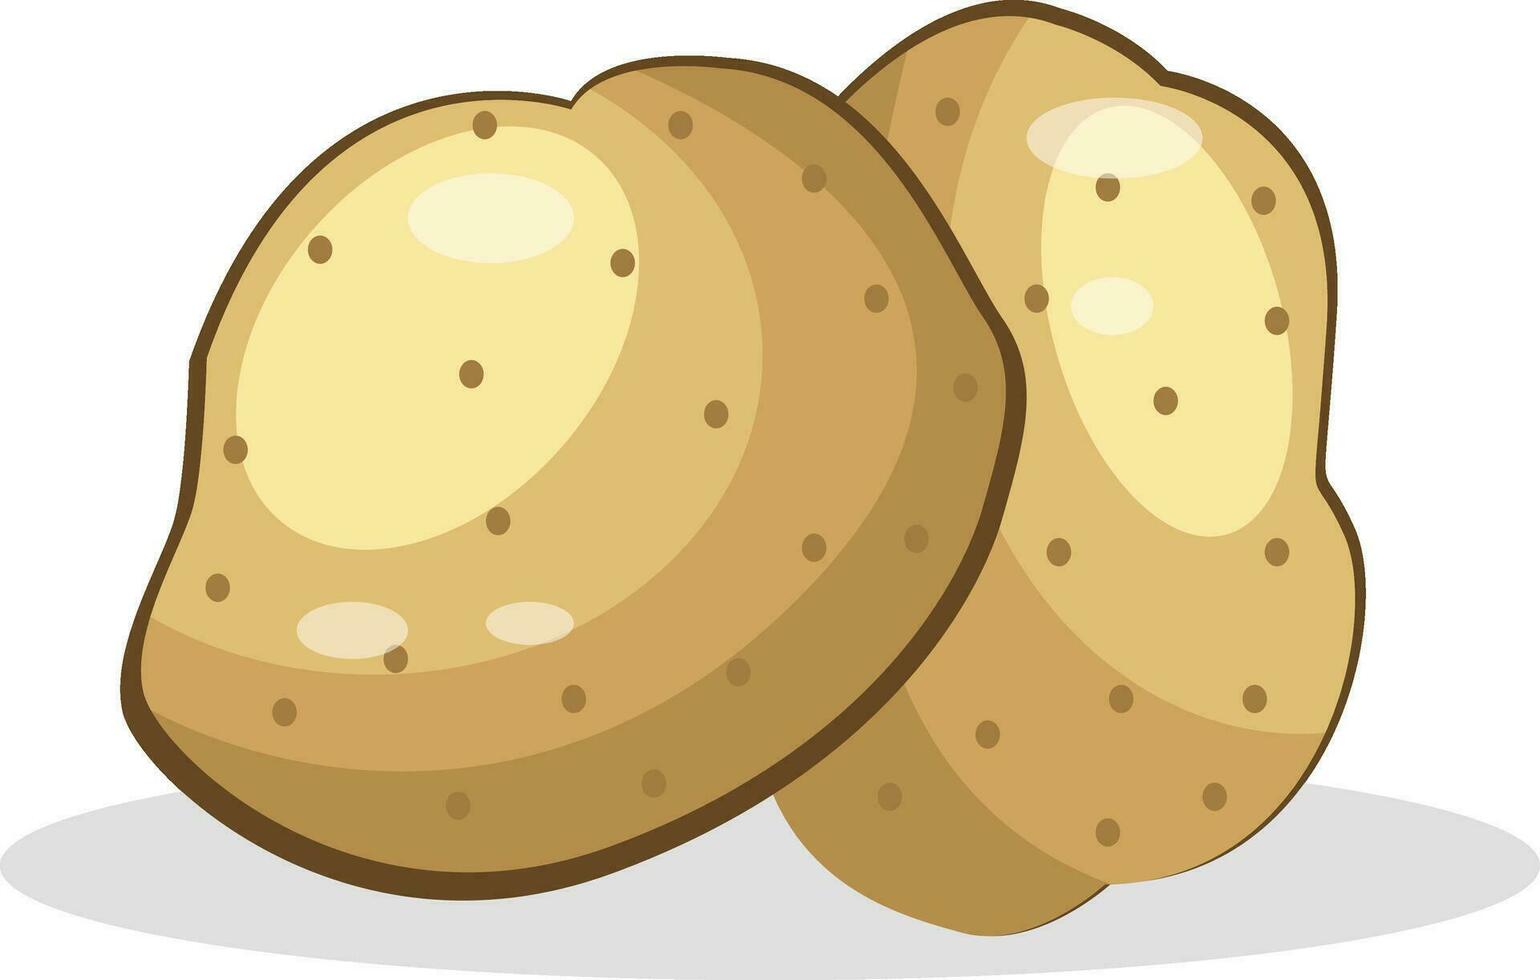 Potato vector color illustration.